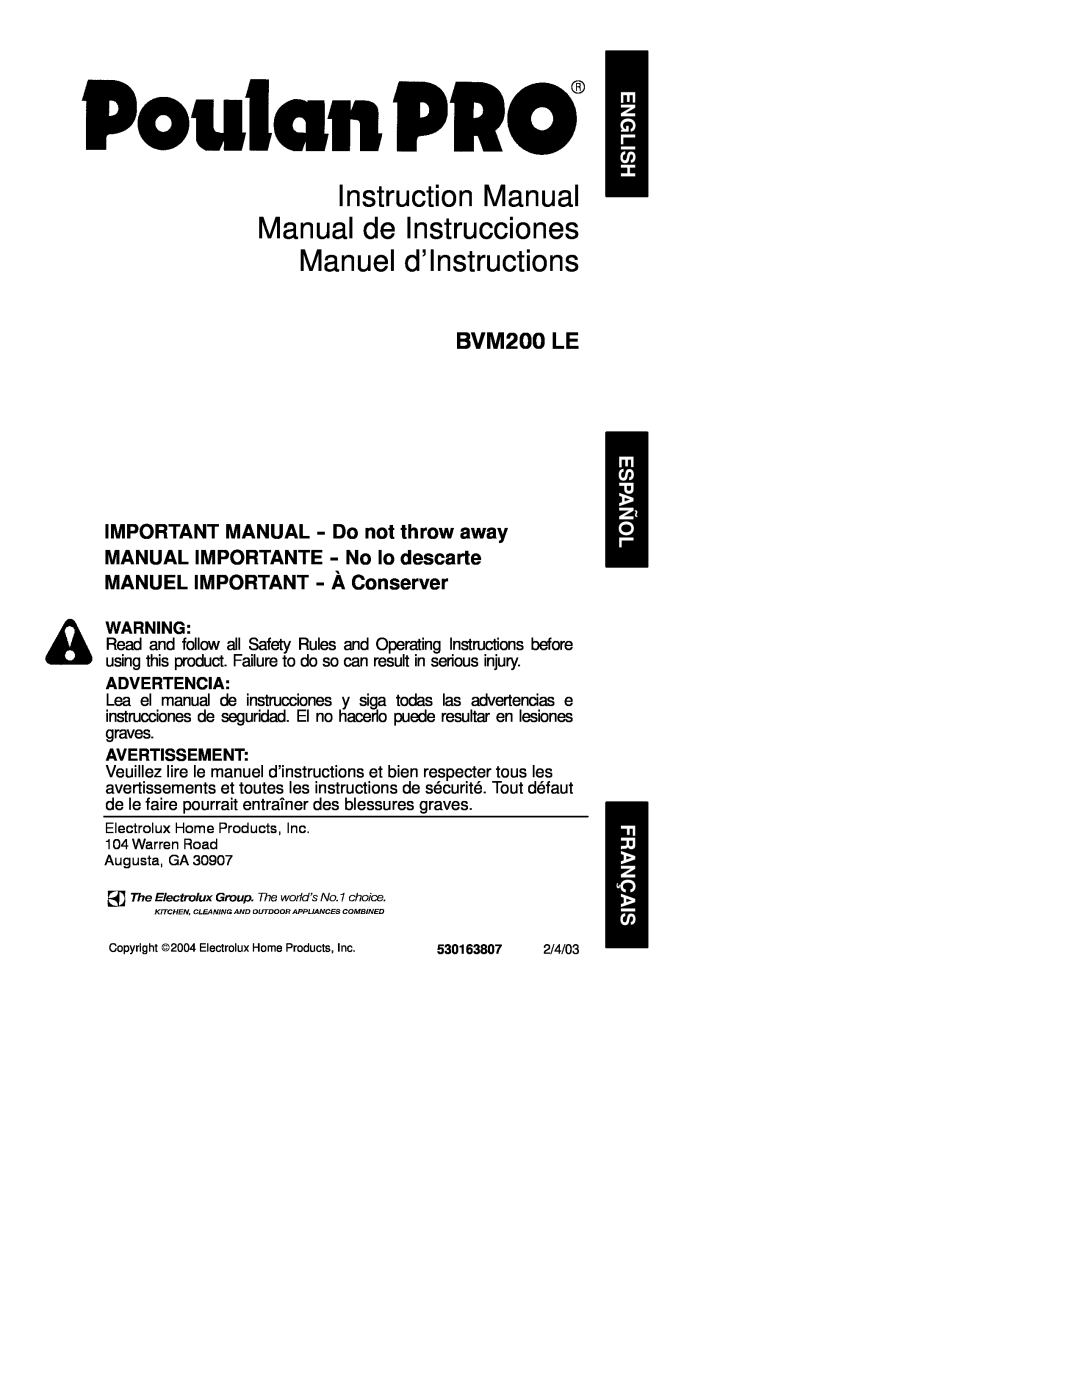 Poulan 530163807 instruction manual BVM200 LE, Advertencia, Avertissement 